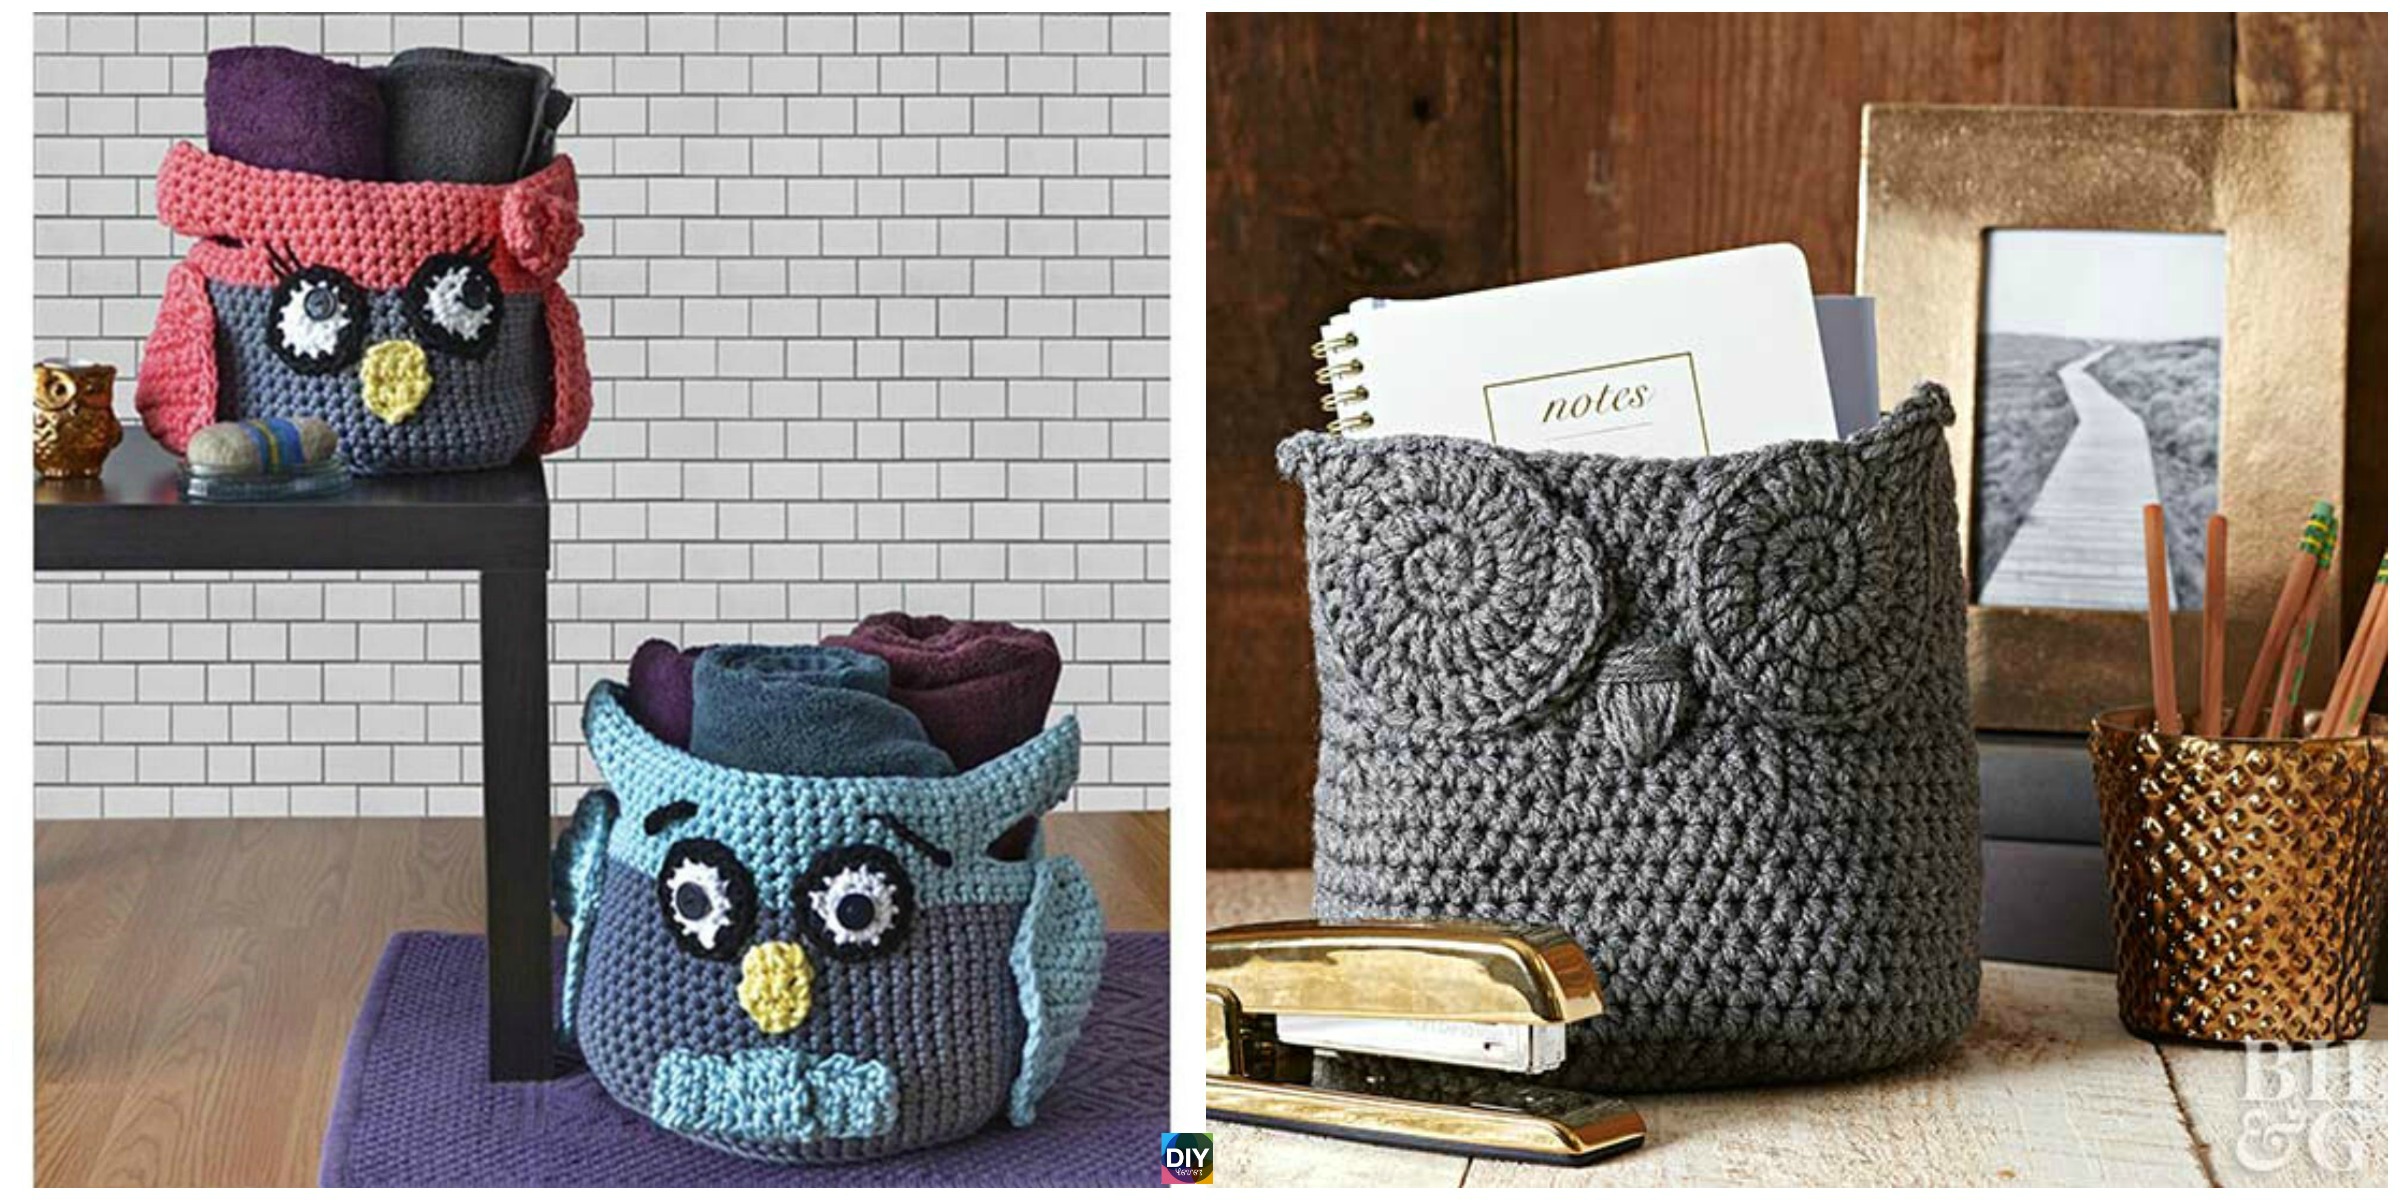 Cute Crochet Owl Basket – Free Patterns